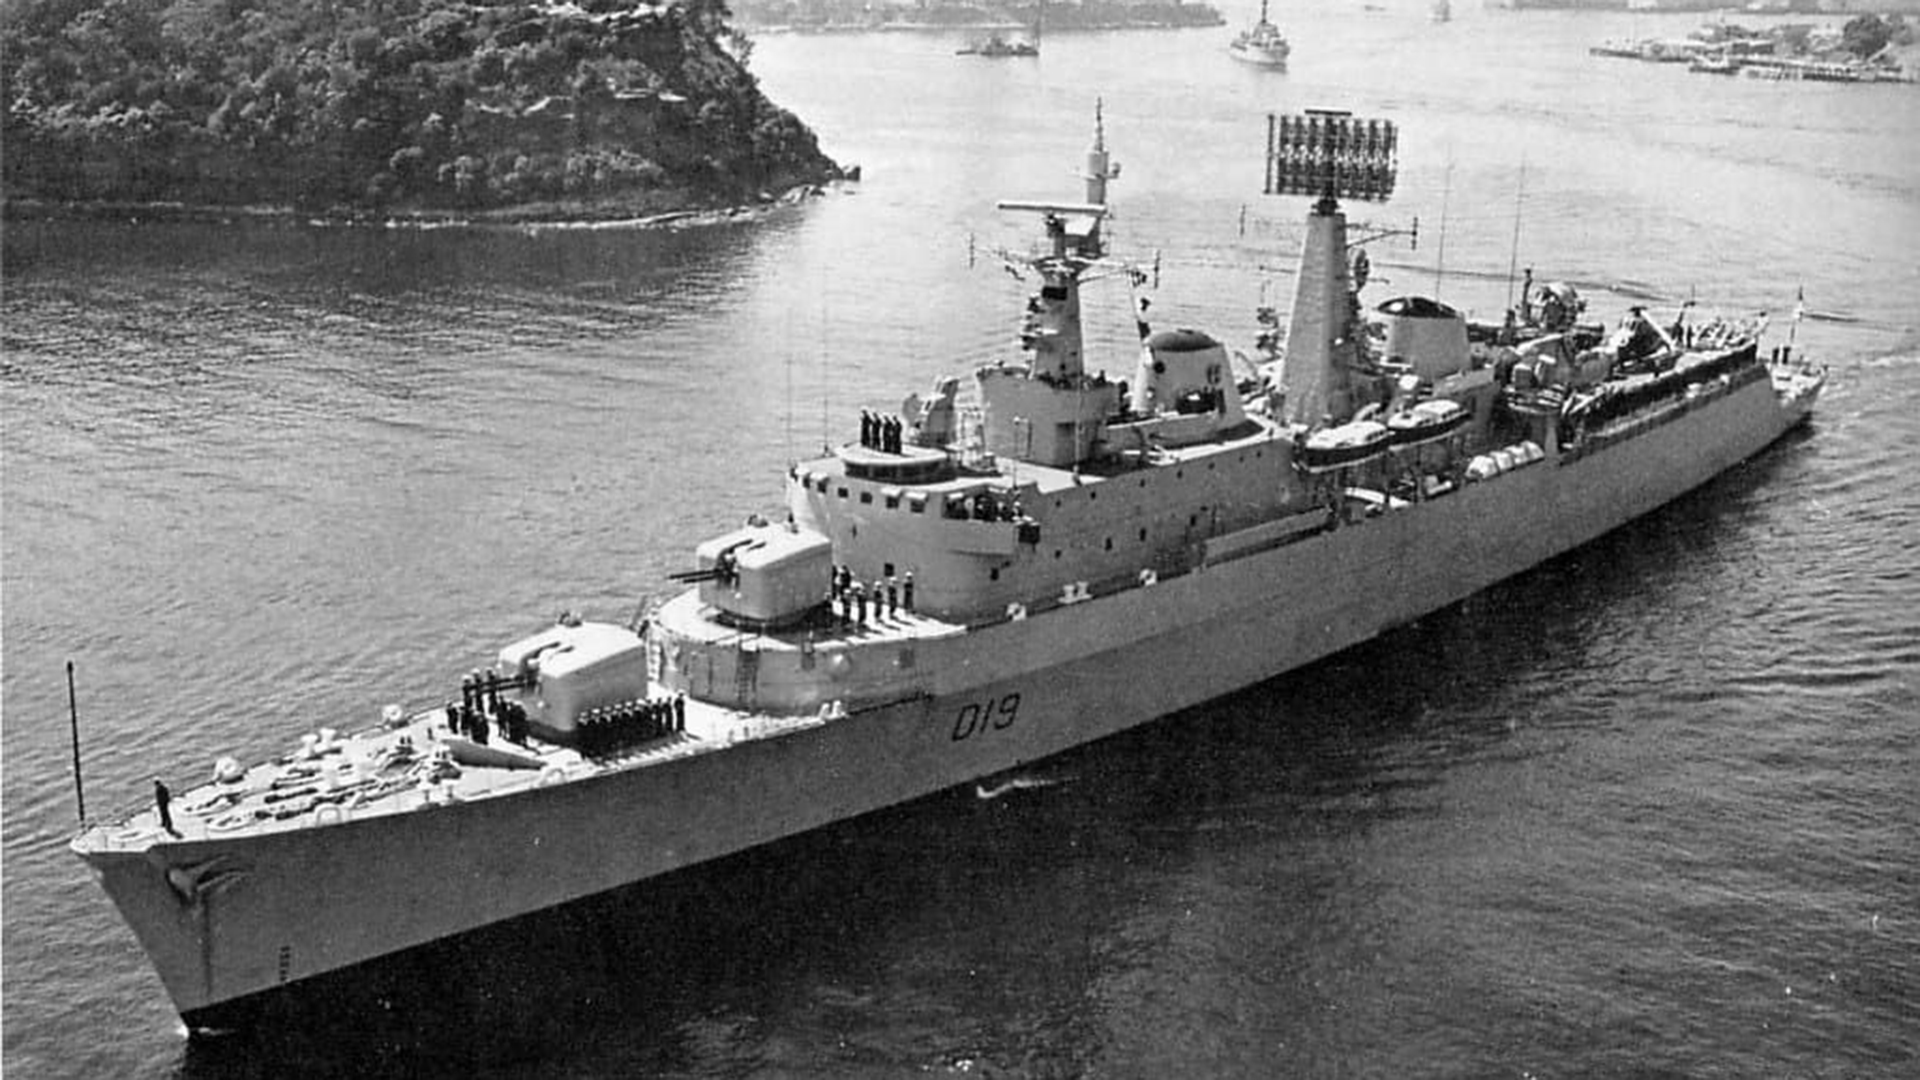  El buque Glamorgan quedó gravemente dañado y fuera de combate. Al término de la guerra el crucero fue donado a Chile, que lo incorporó a su armada con otro nombre